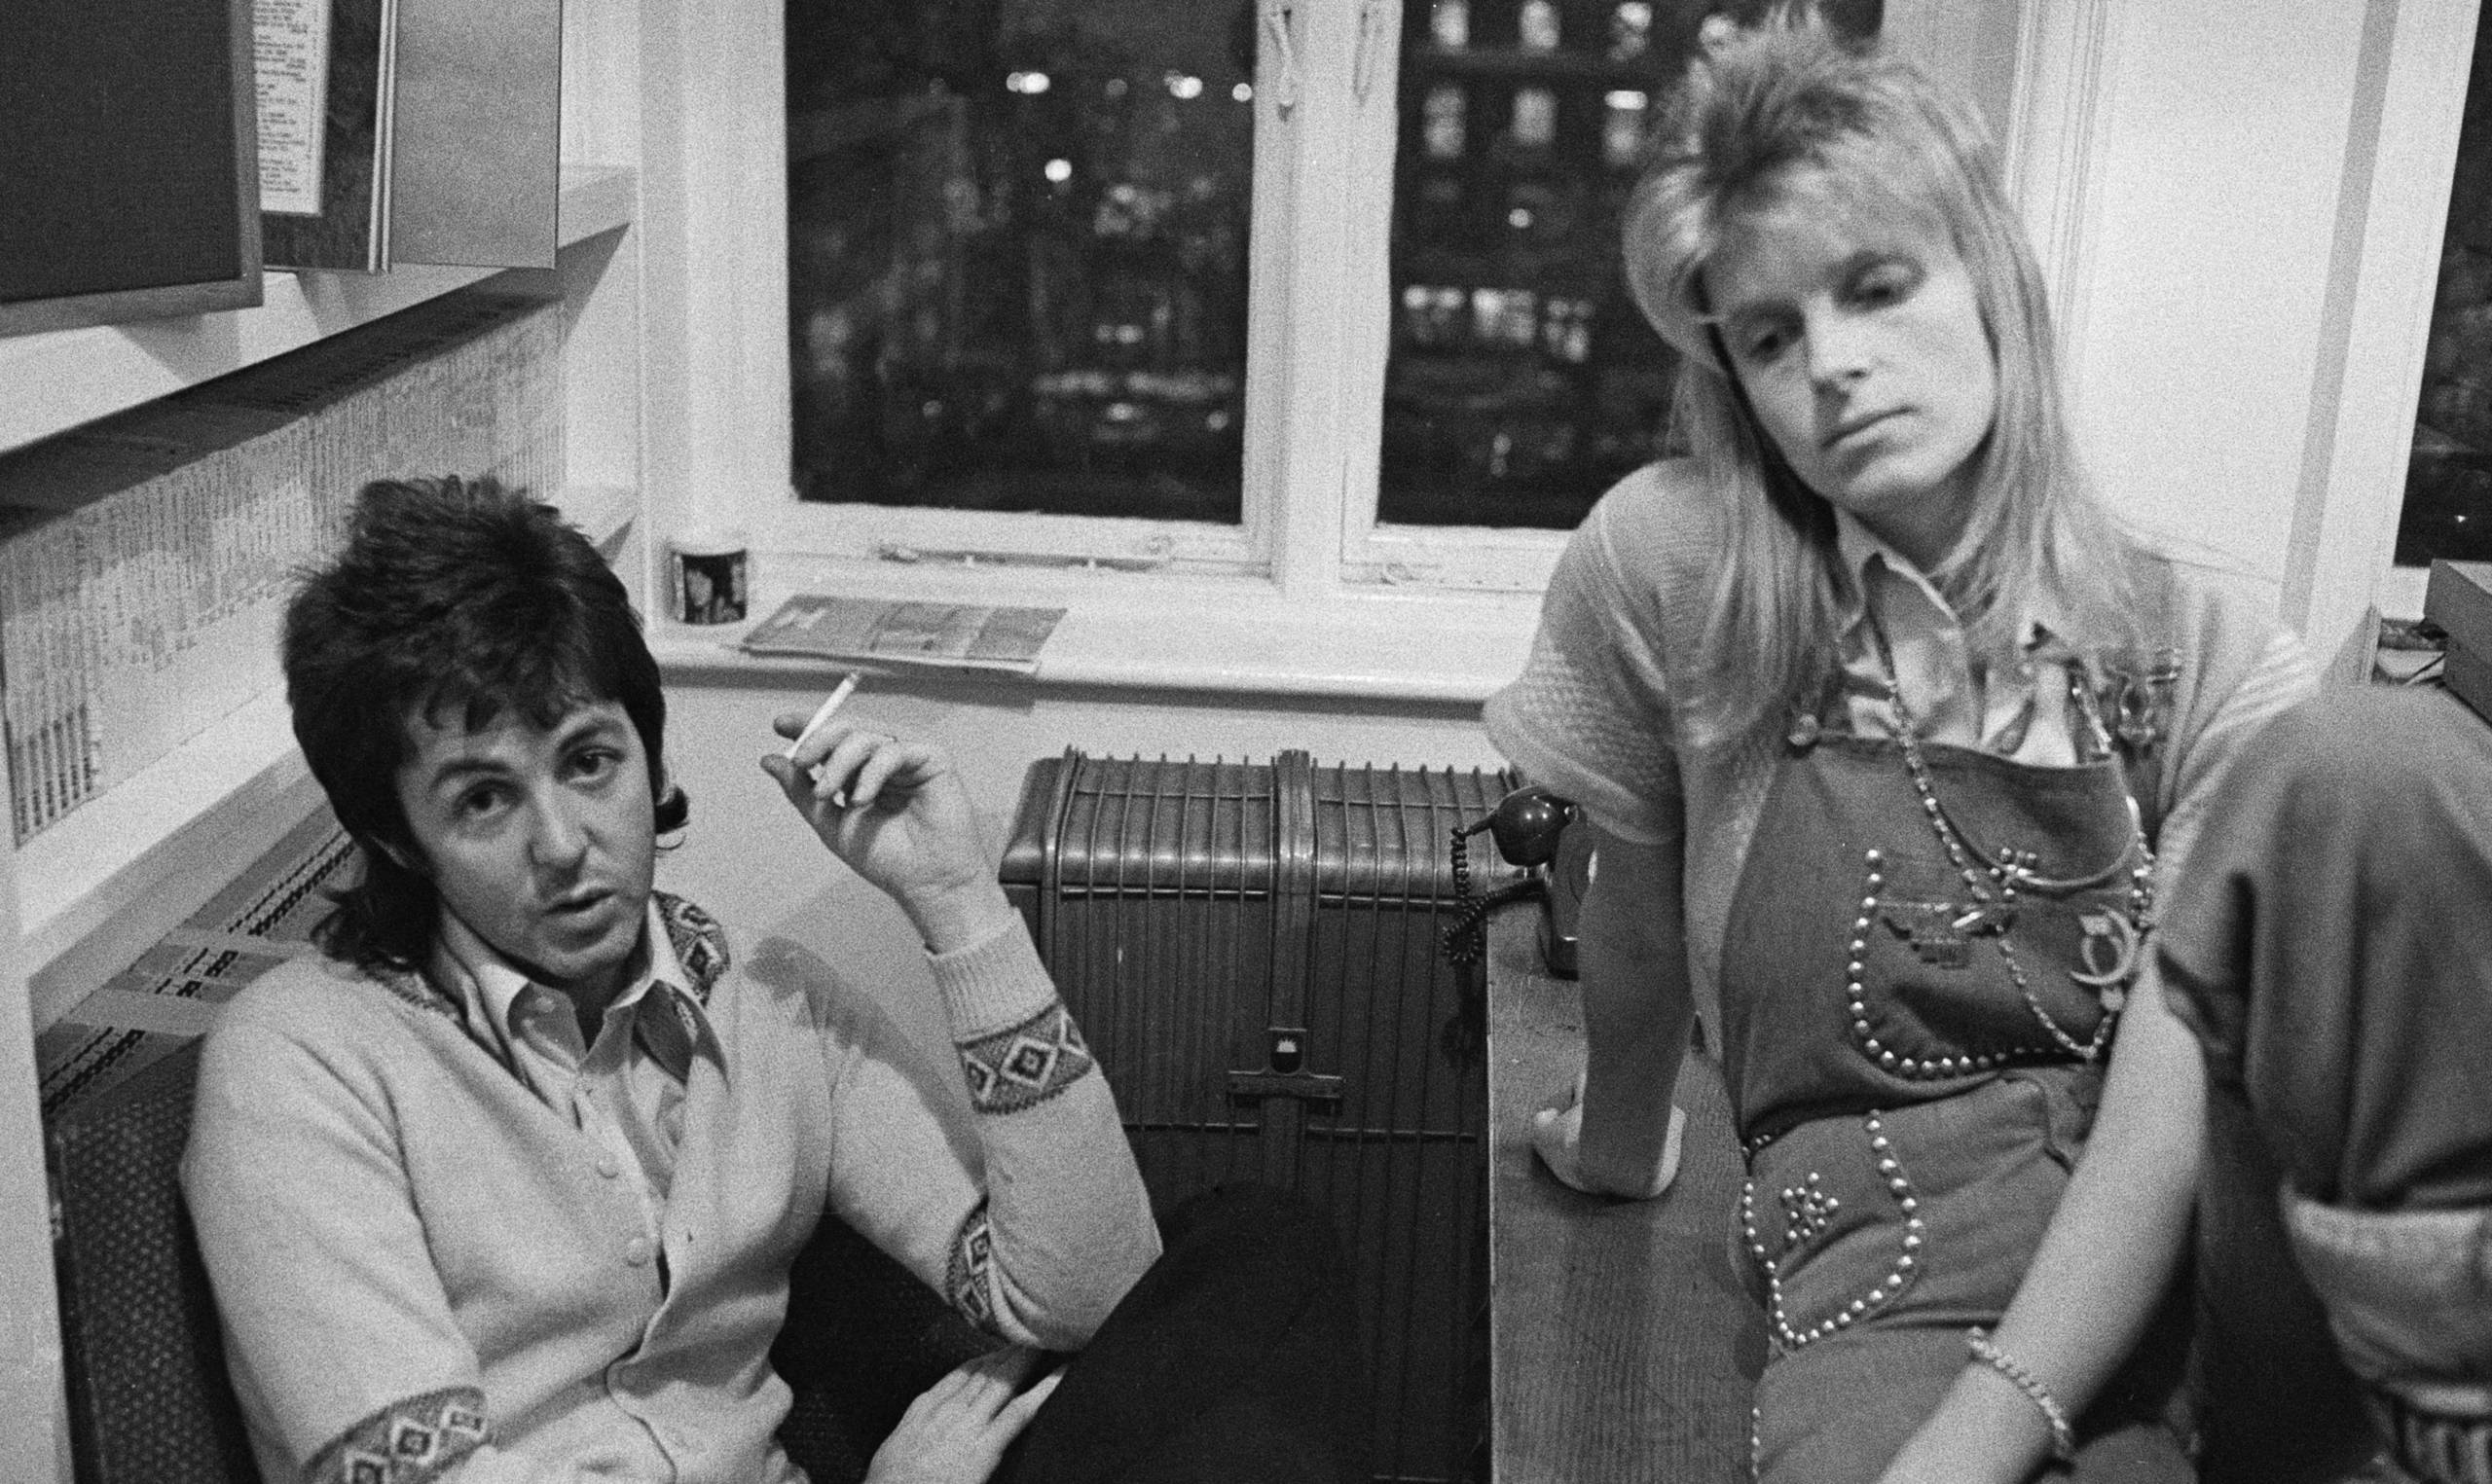 Gemeinsam glücklich, gemeinsam in einer Band: Paul und Linda McCartney